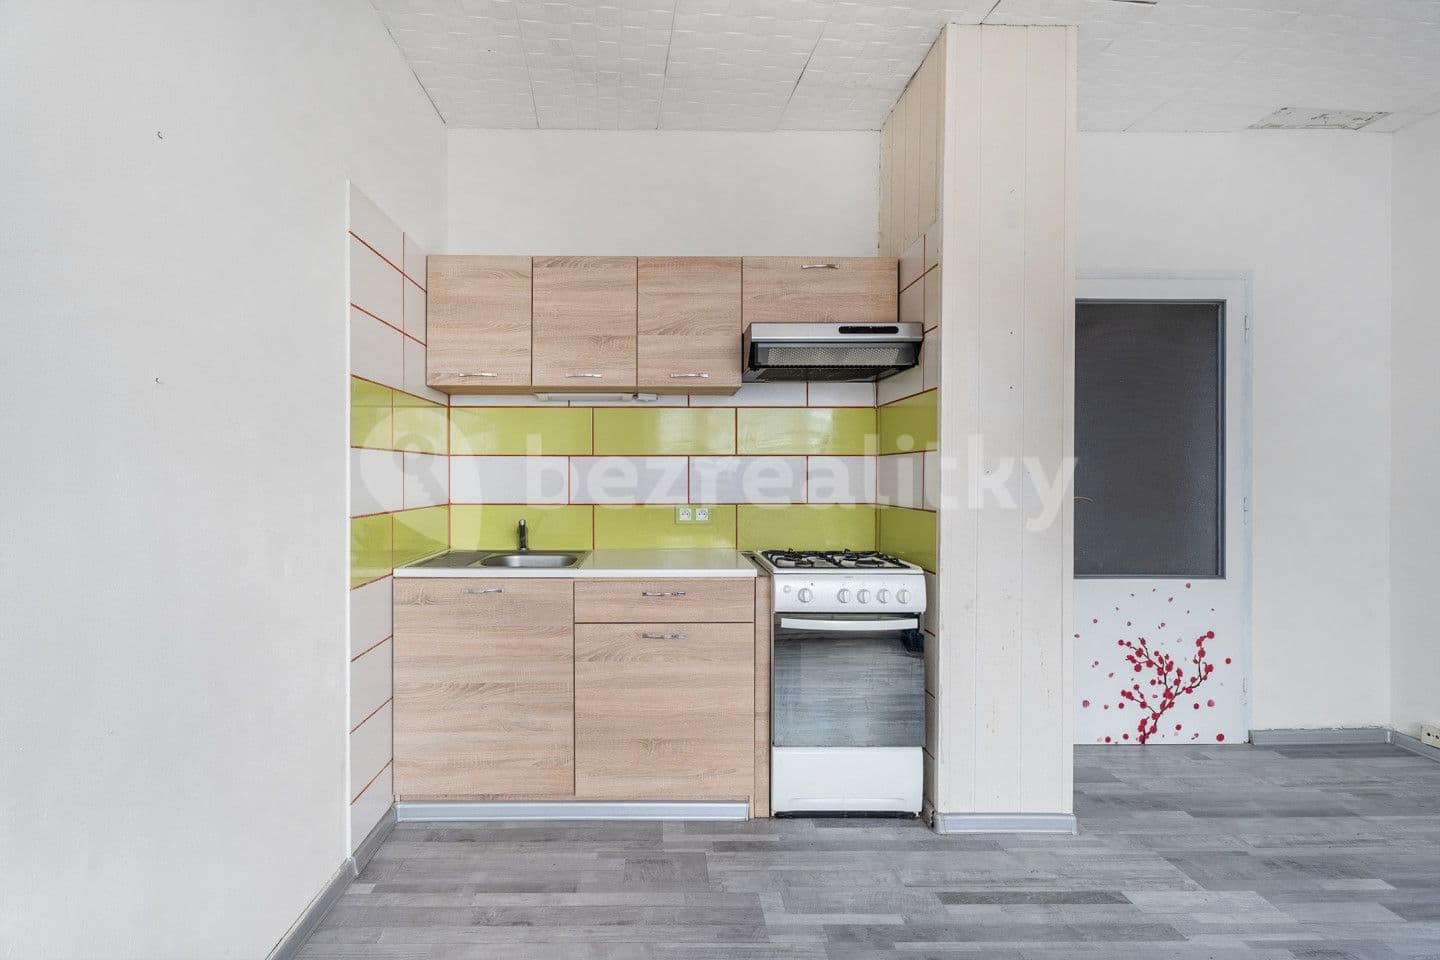 1 bedroom with open-plan kitchen flat for sale, 41 m², Sídliště, Cvikov, Liberecký Region